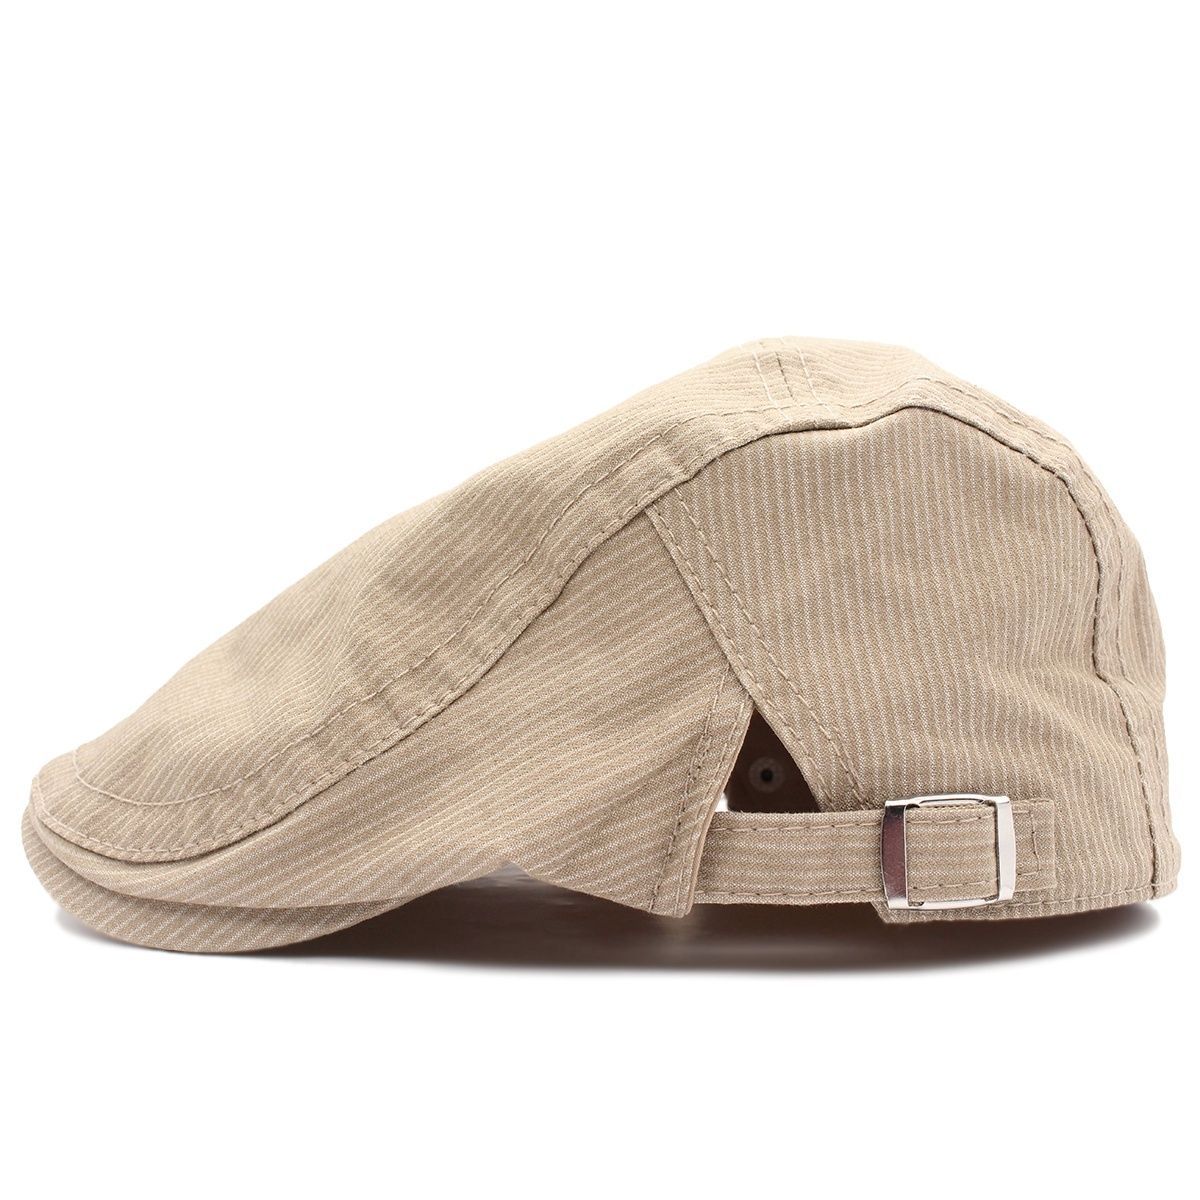 ハンチング帽子 ストライプ柄 綿キャップ 帽子 56~59cm HC172-4